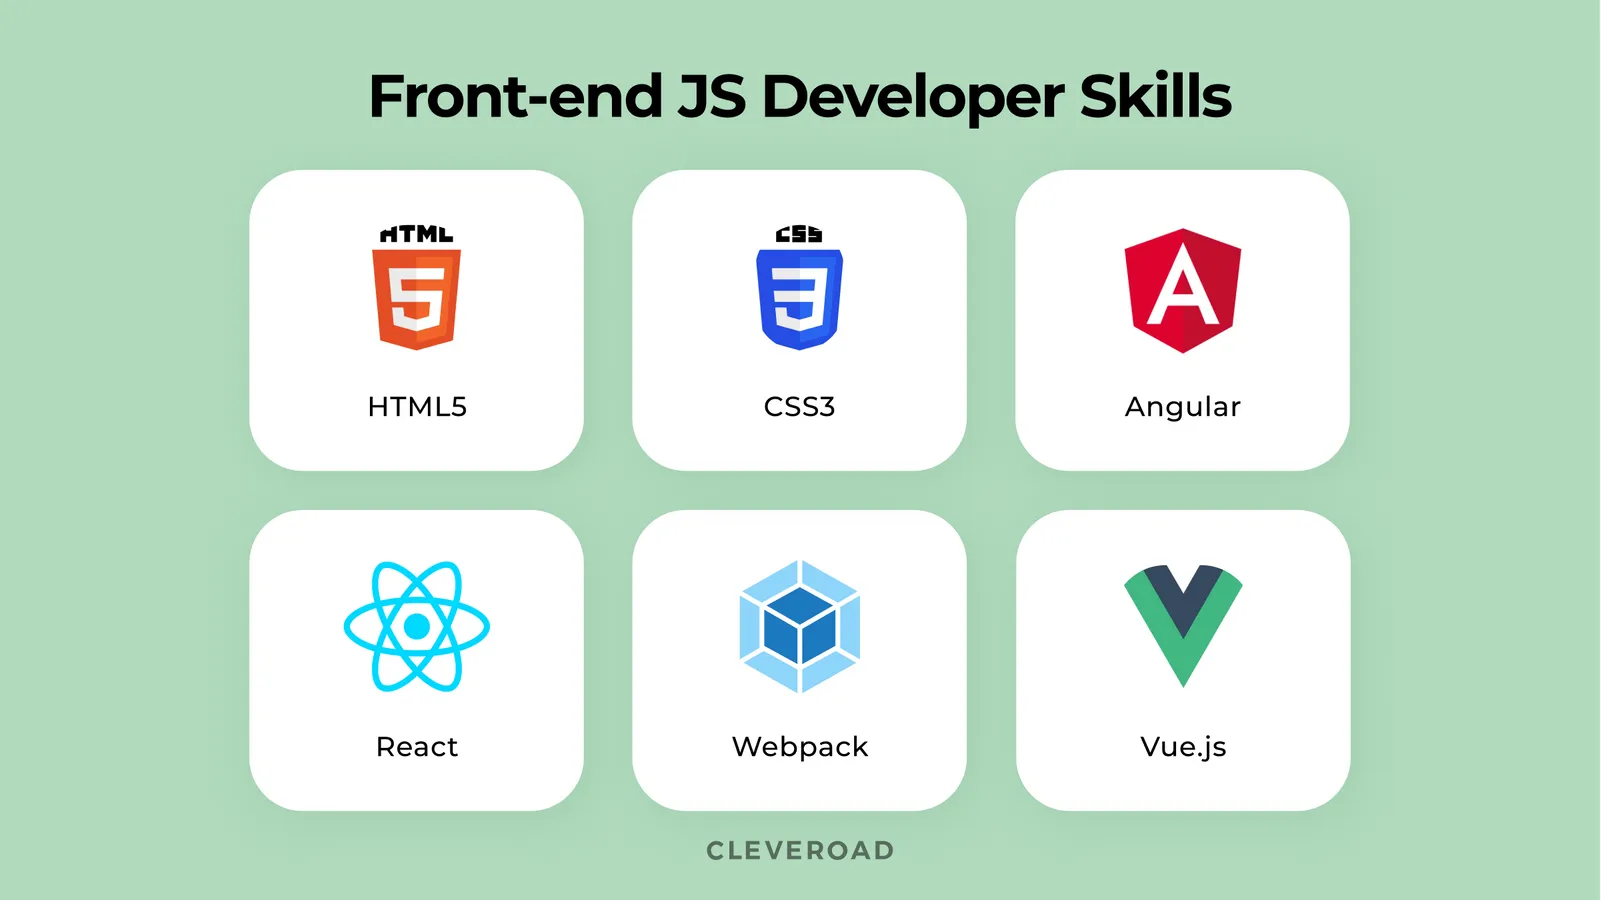 Frontend JavaScript Developer Skills